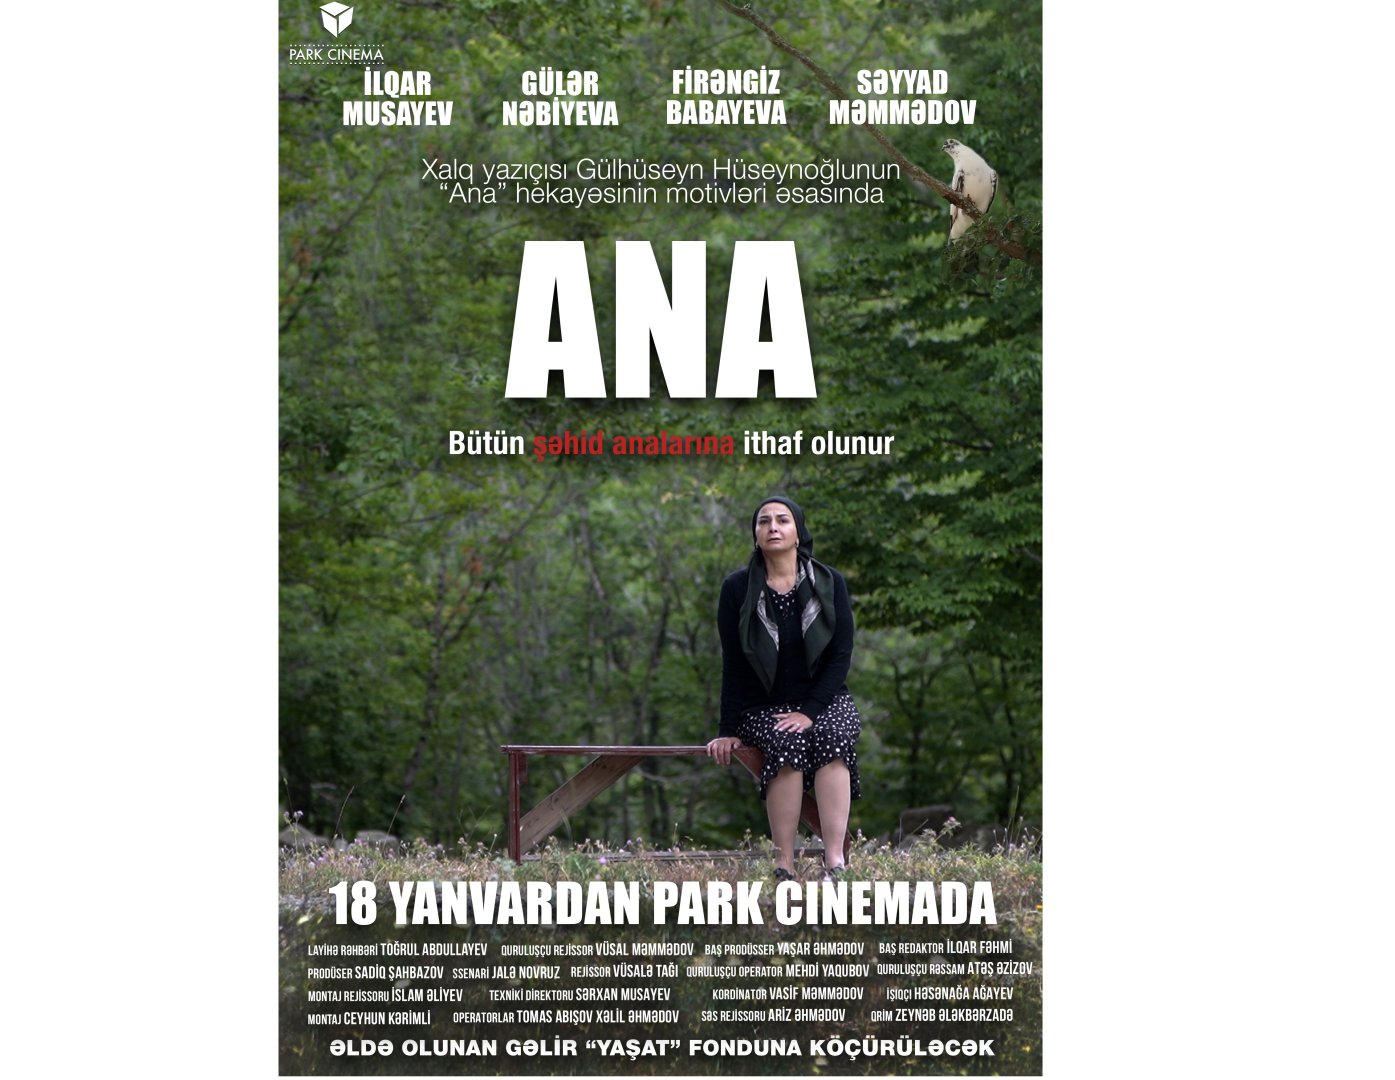 Park Cinema покажет фильм "Ana", посвященный матерям шехидов